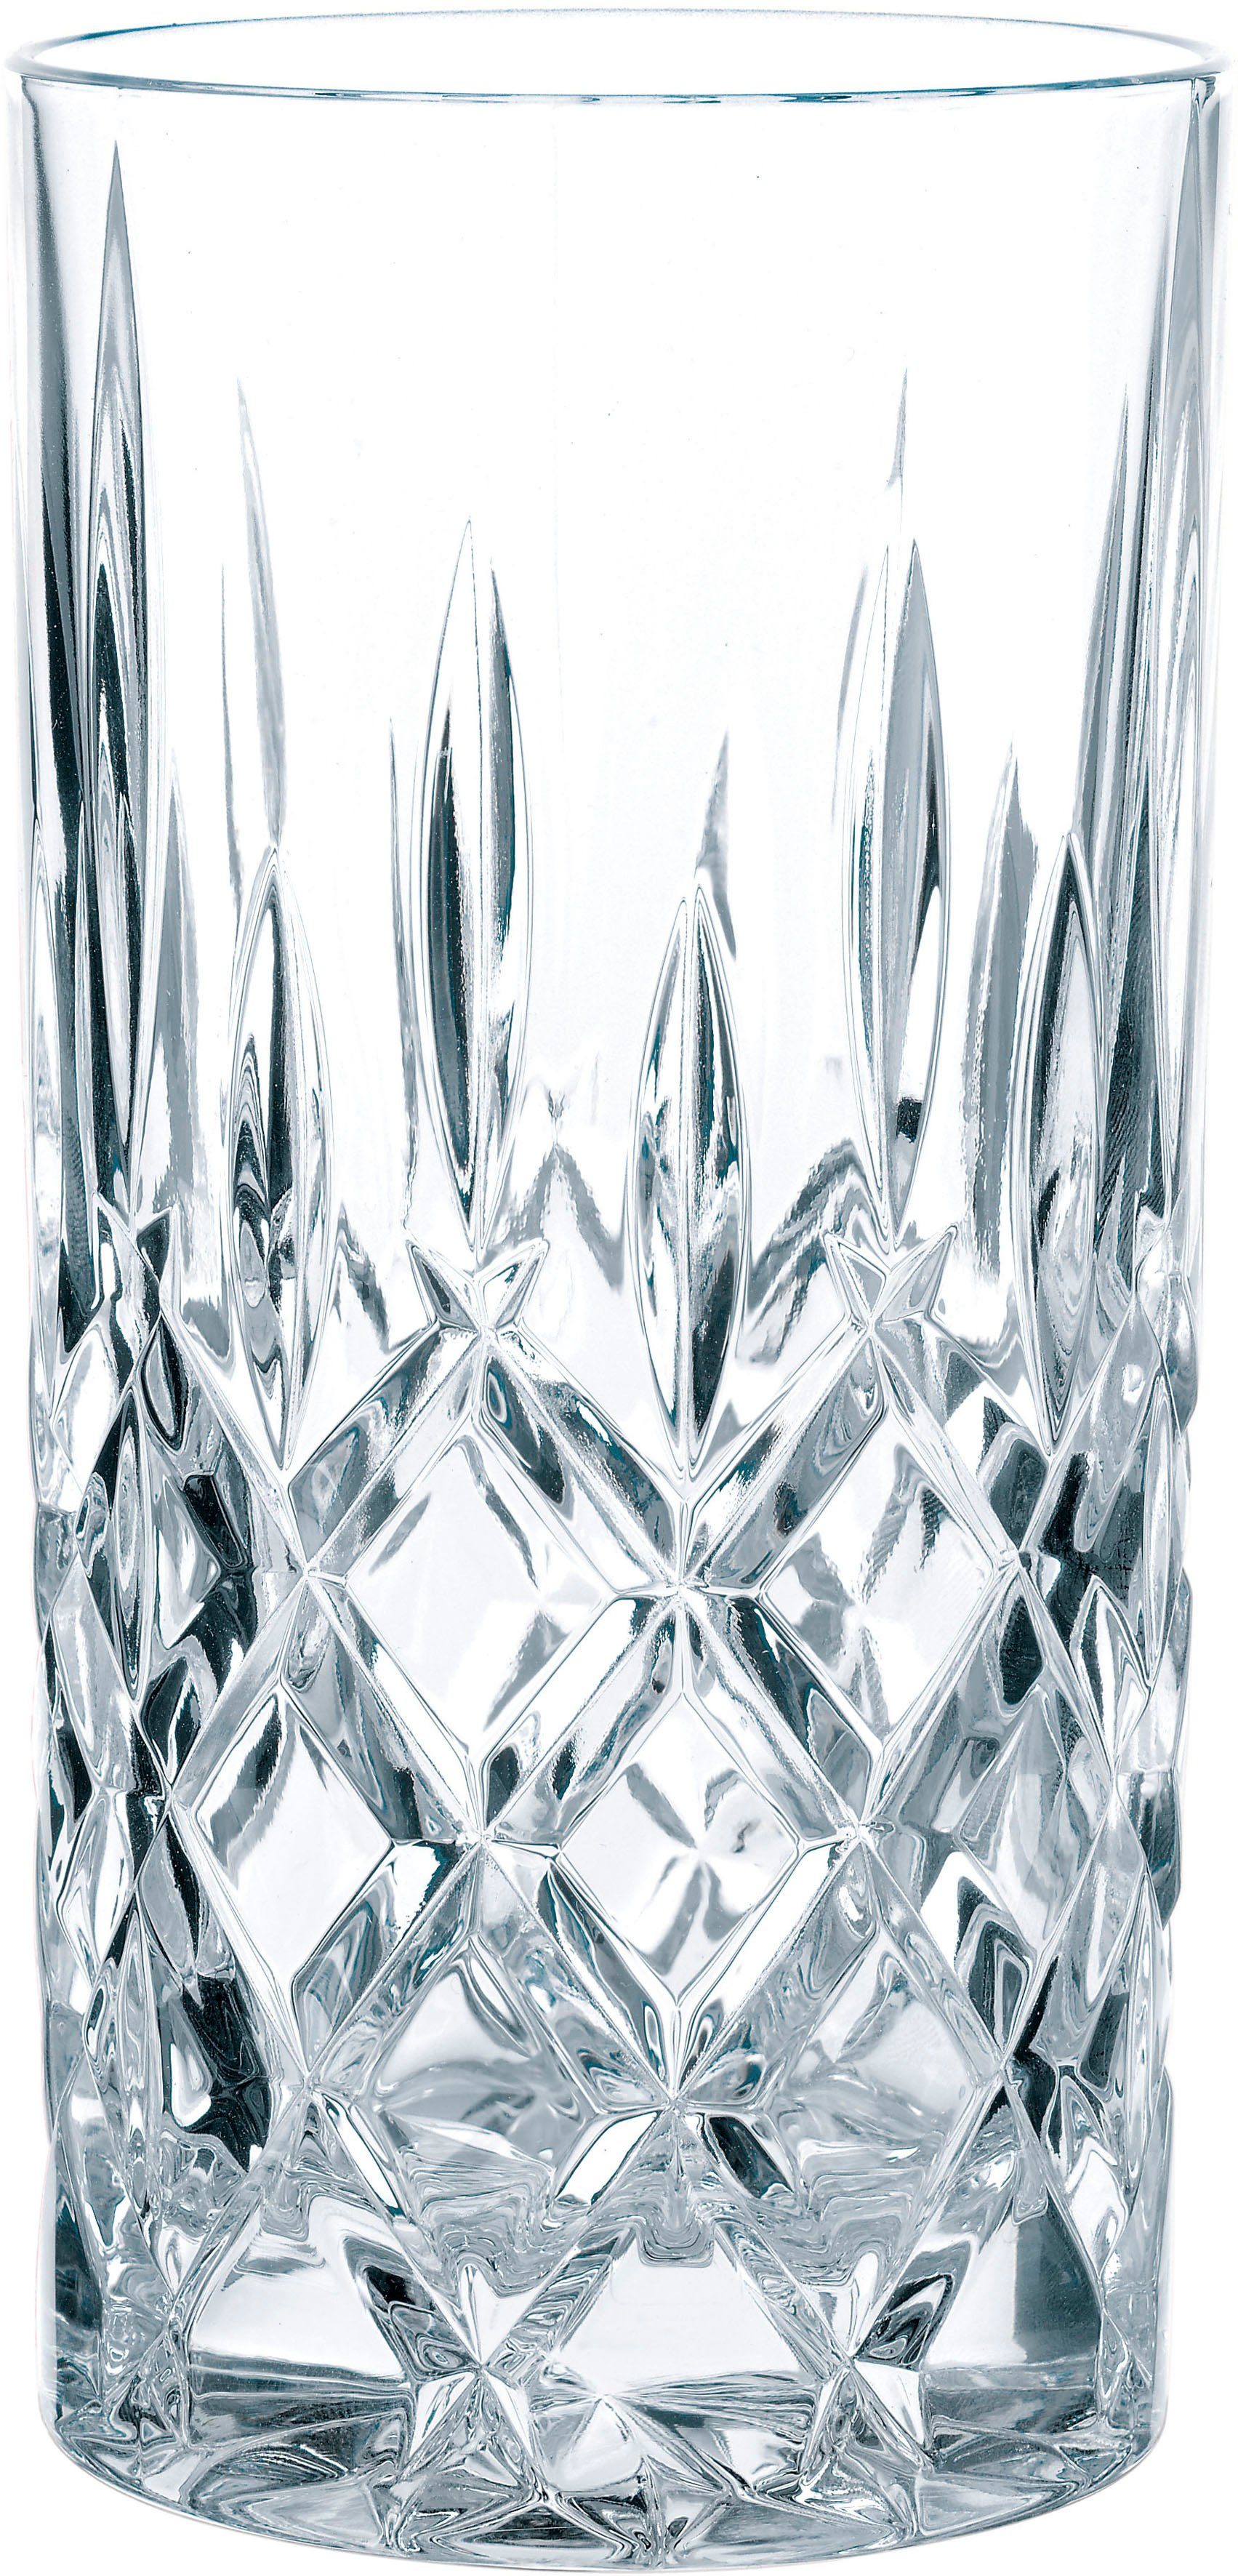 395 ml, Noblesse, Germany, Longdrinkglas Kristallglas, Made Nachtmann in 6-teilig